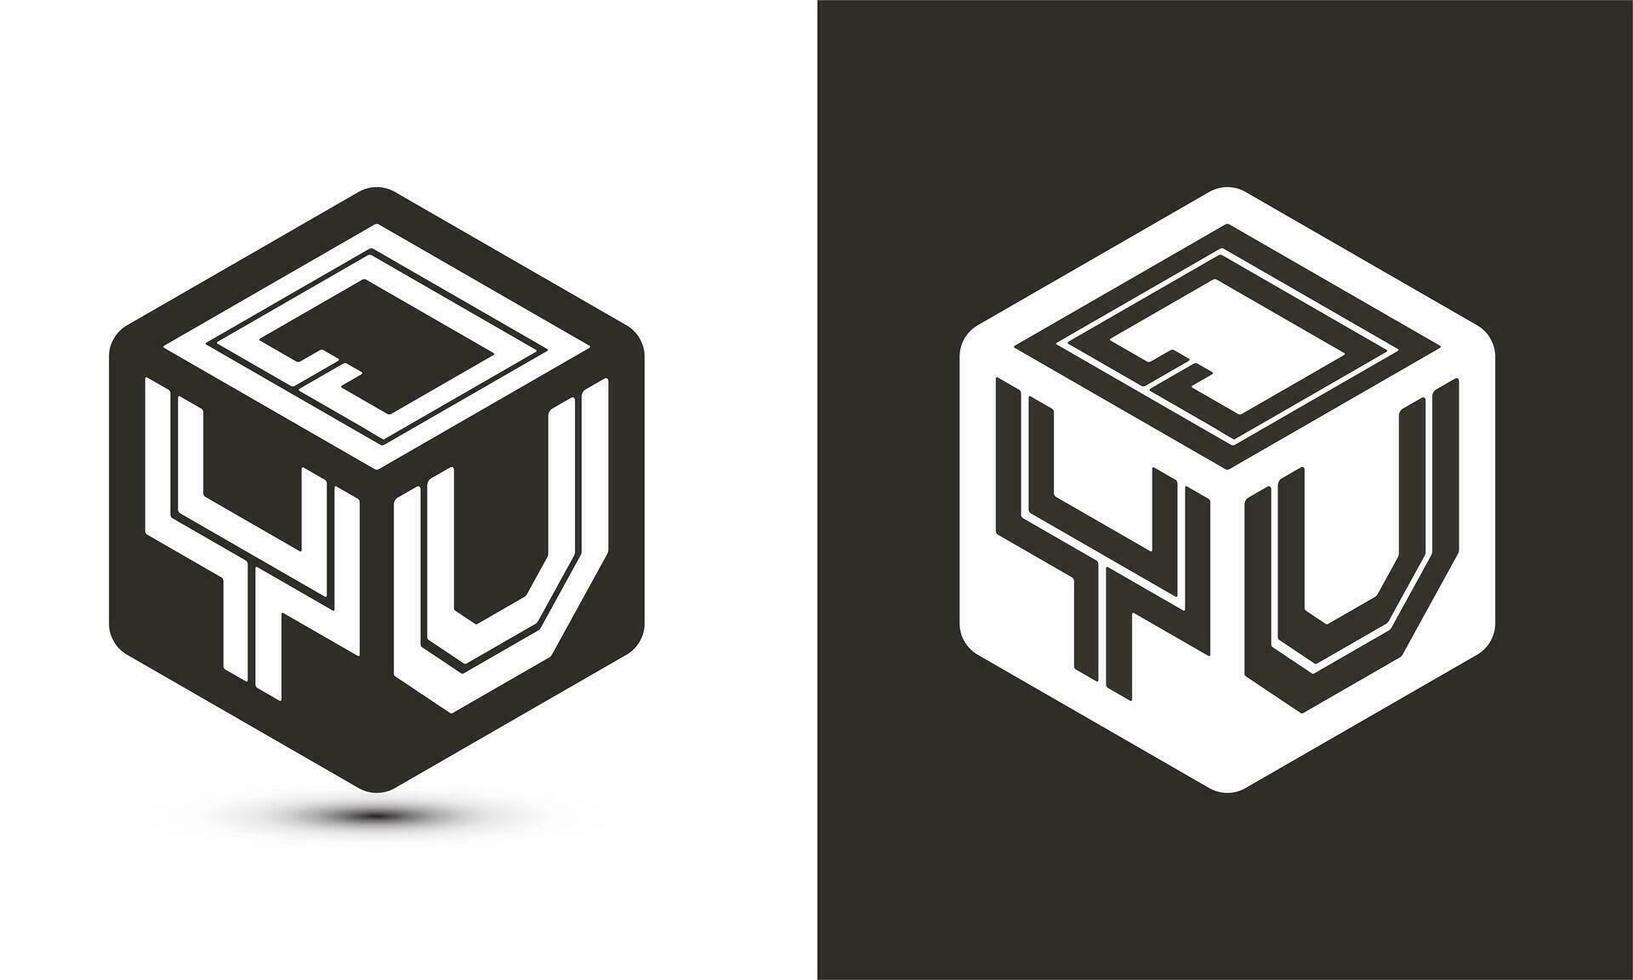 qyu brief logo ontwerp met illustrator kubus logo, vector logo modern alfabet doopvont overlappen stijl.